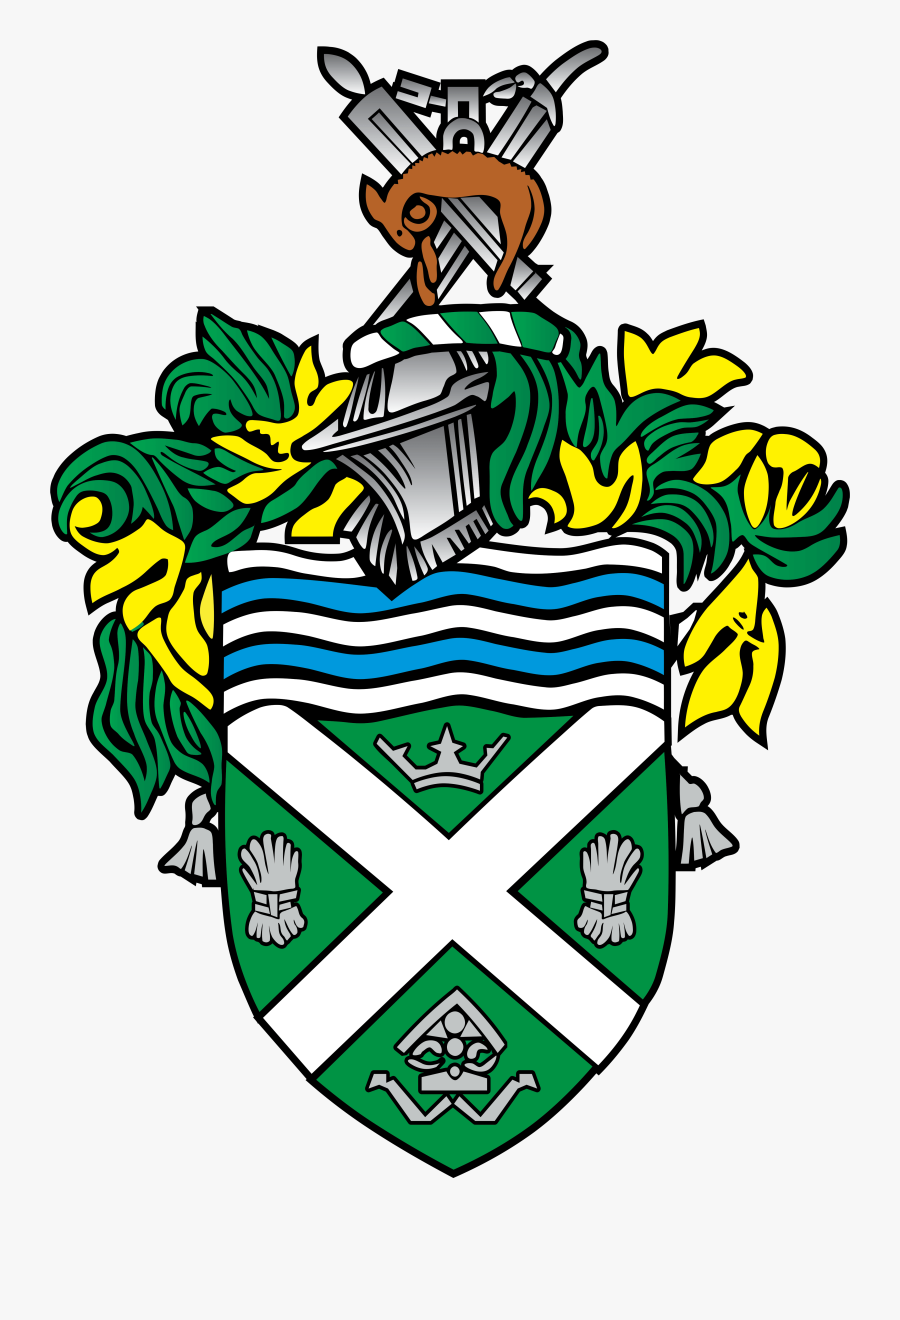 Hexham Town Council - Crest, Transparent Clipart